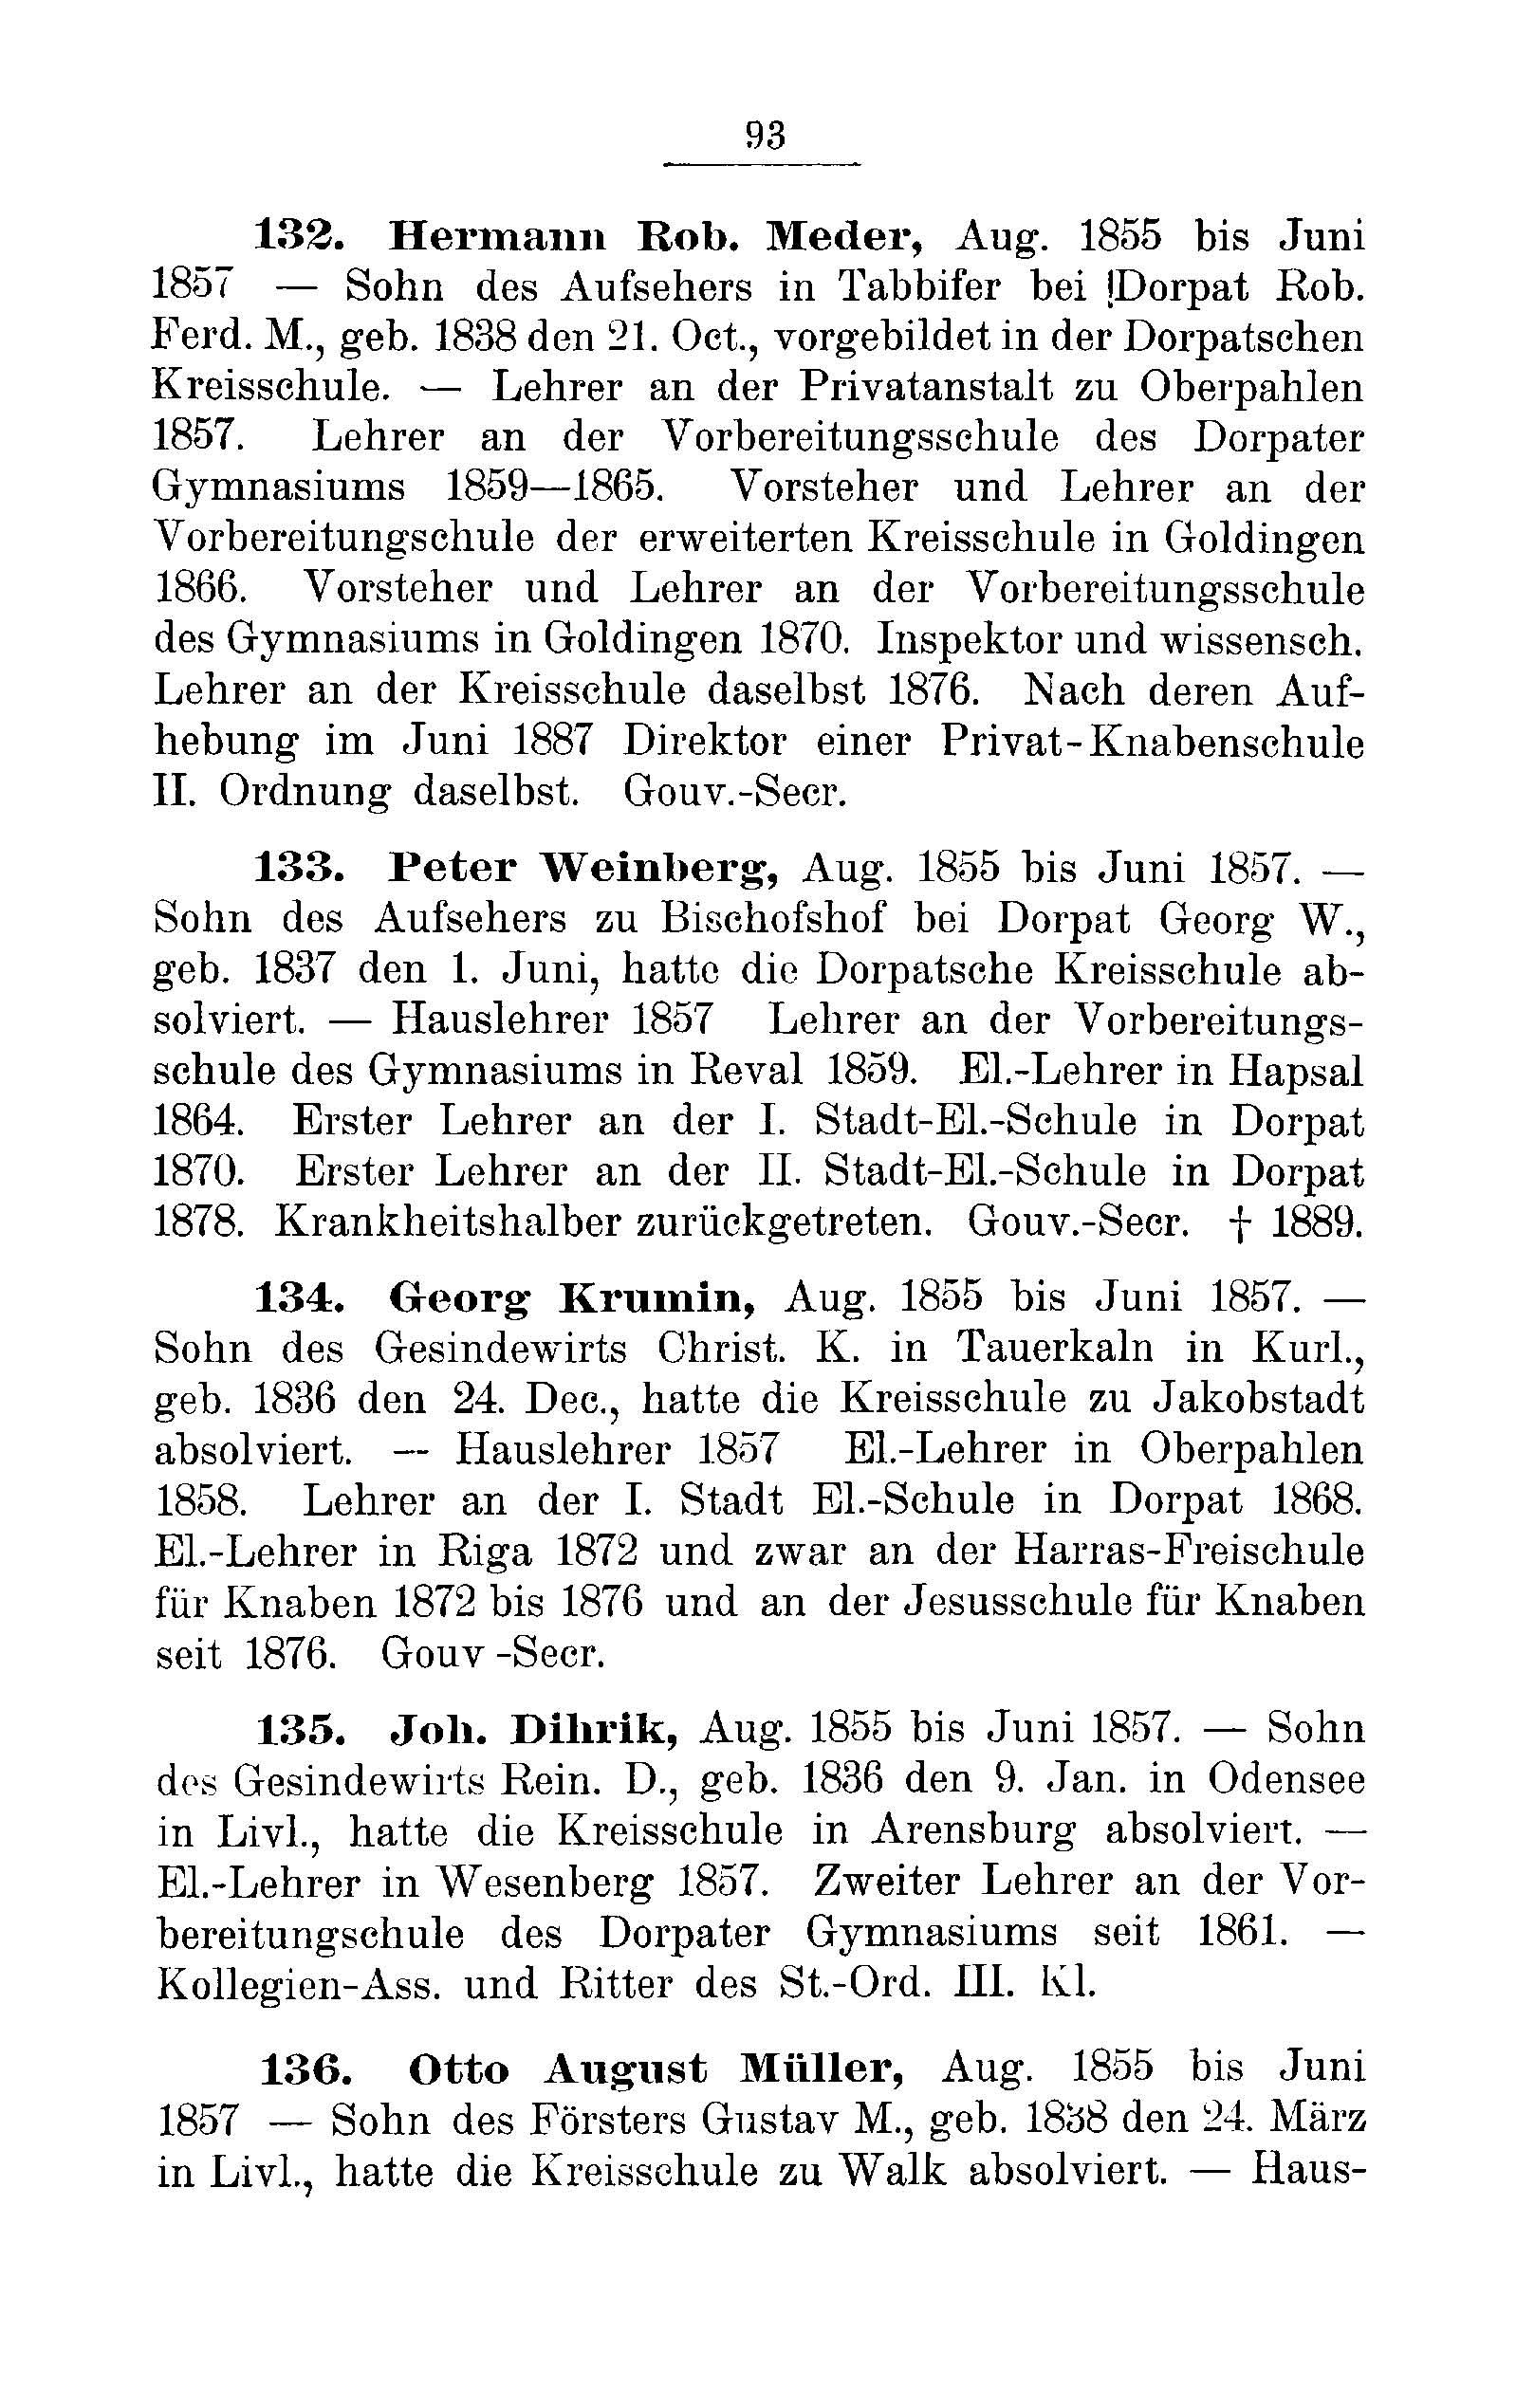 Das Erste Dorpatsche Lehrer-Seminar (1890) | 96. Main body of text